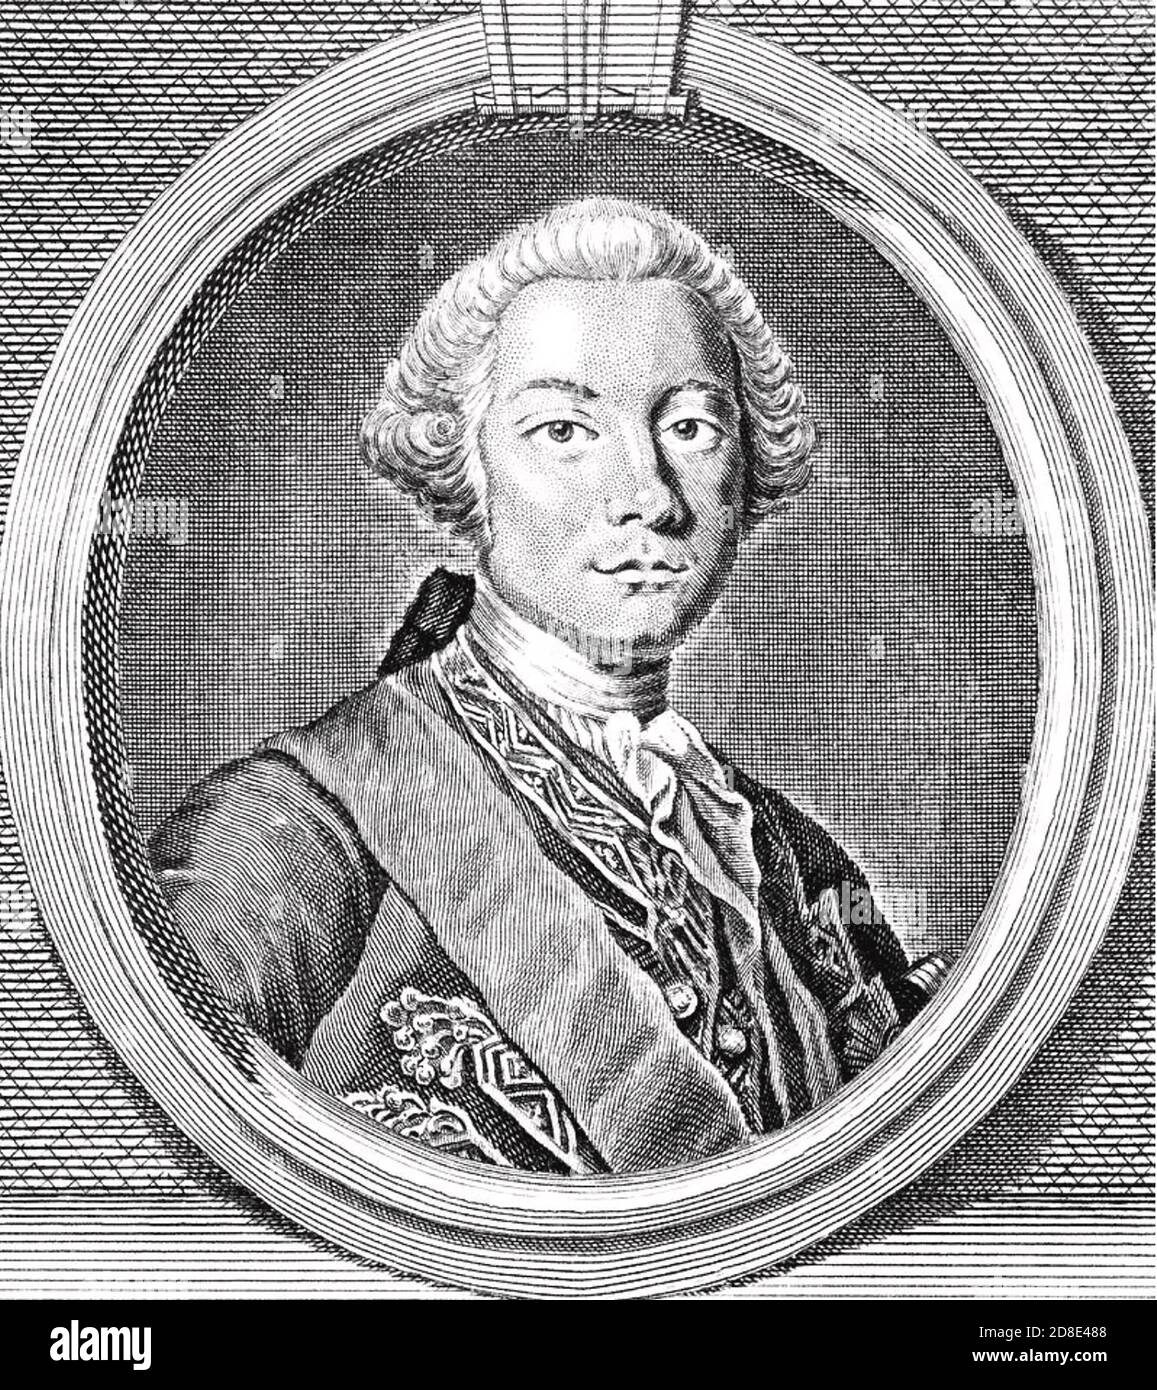 GEORGE POCOCK (1706-1792) officier de la Marine royale britannique Banque D'Images